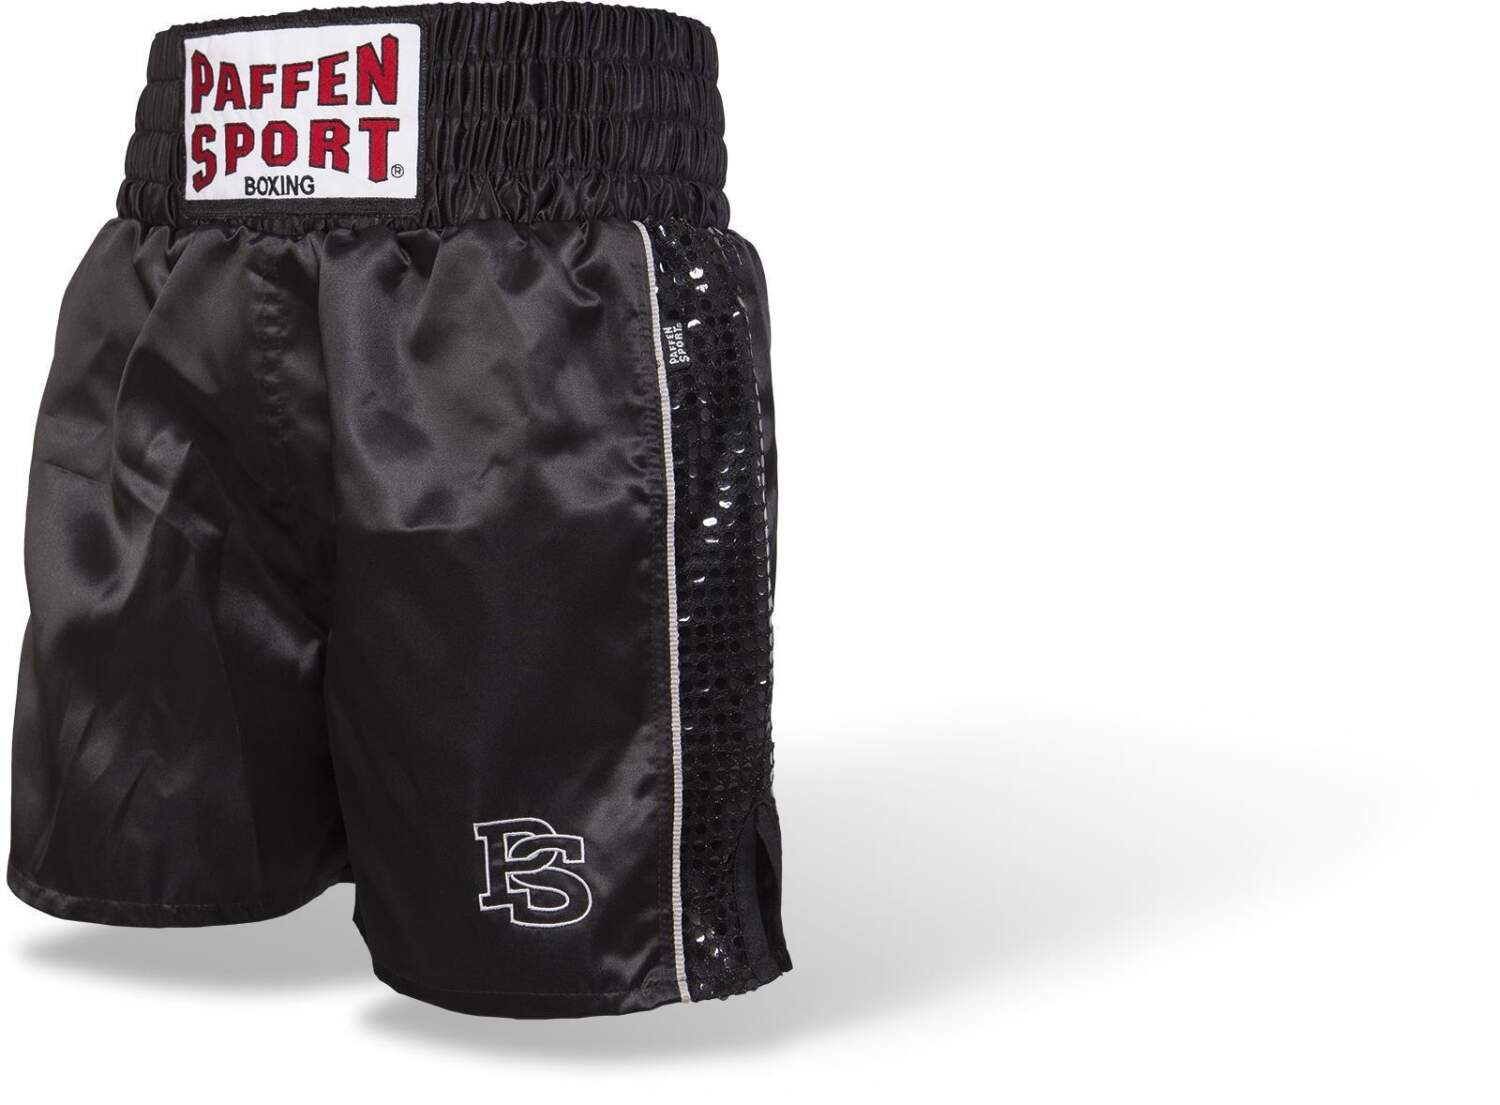 Paffen Sport Contest Boxerhose schwarz 